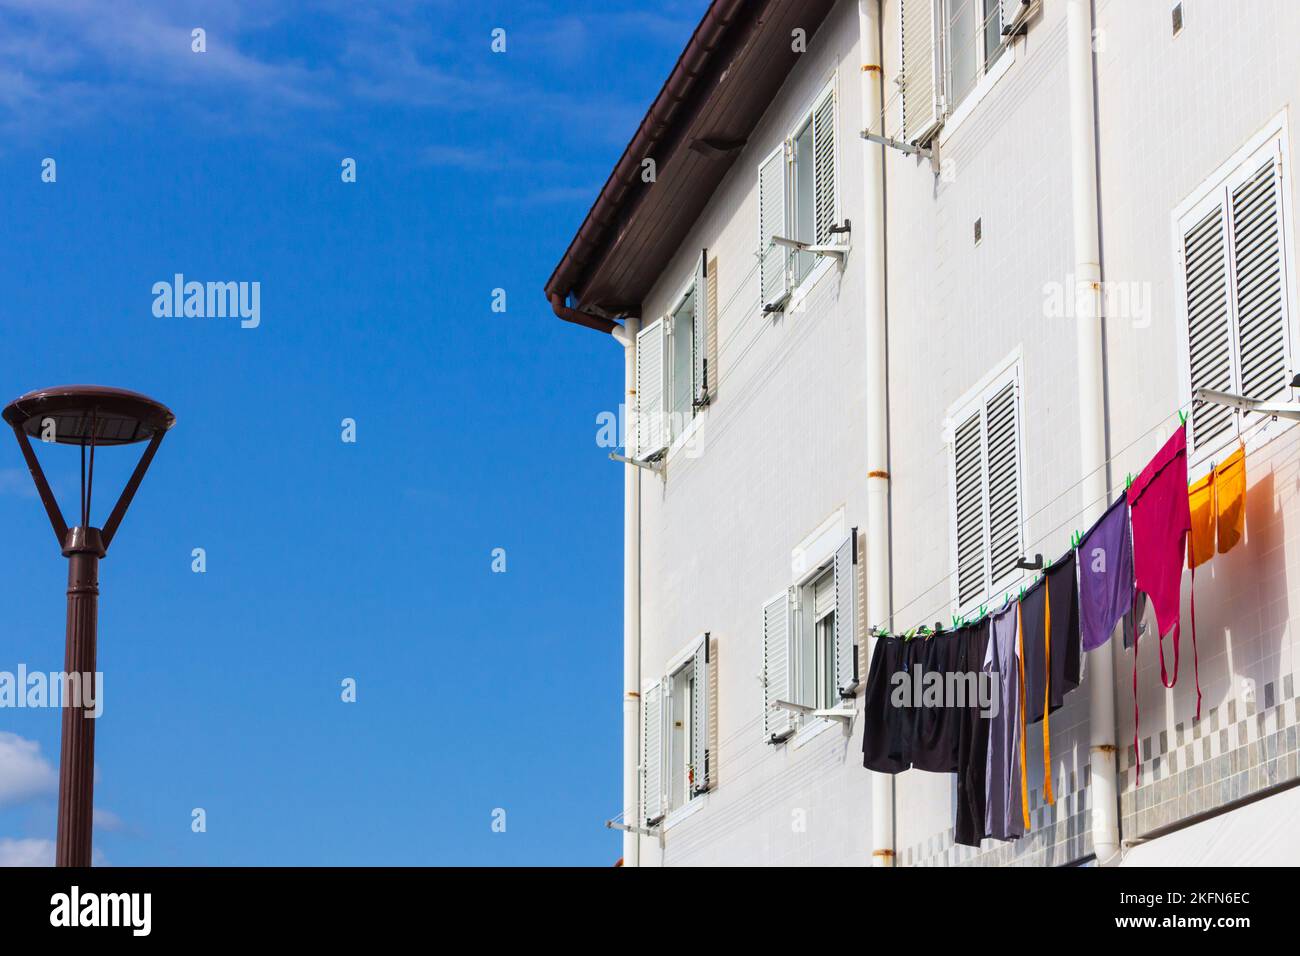 Séchage de vêtements à l'extérieur de la maison avec lanterne de rue au Portugal. Ouvrez la fenêtre et séchez le linge. Maison traditionnelle au Portugal, Lisbonne. Concept de blanchisserie Banque D'Images